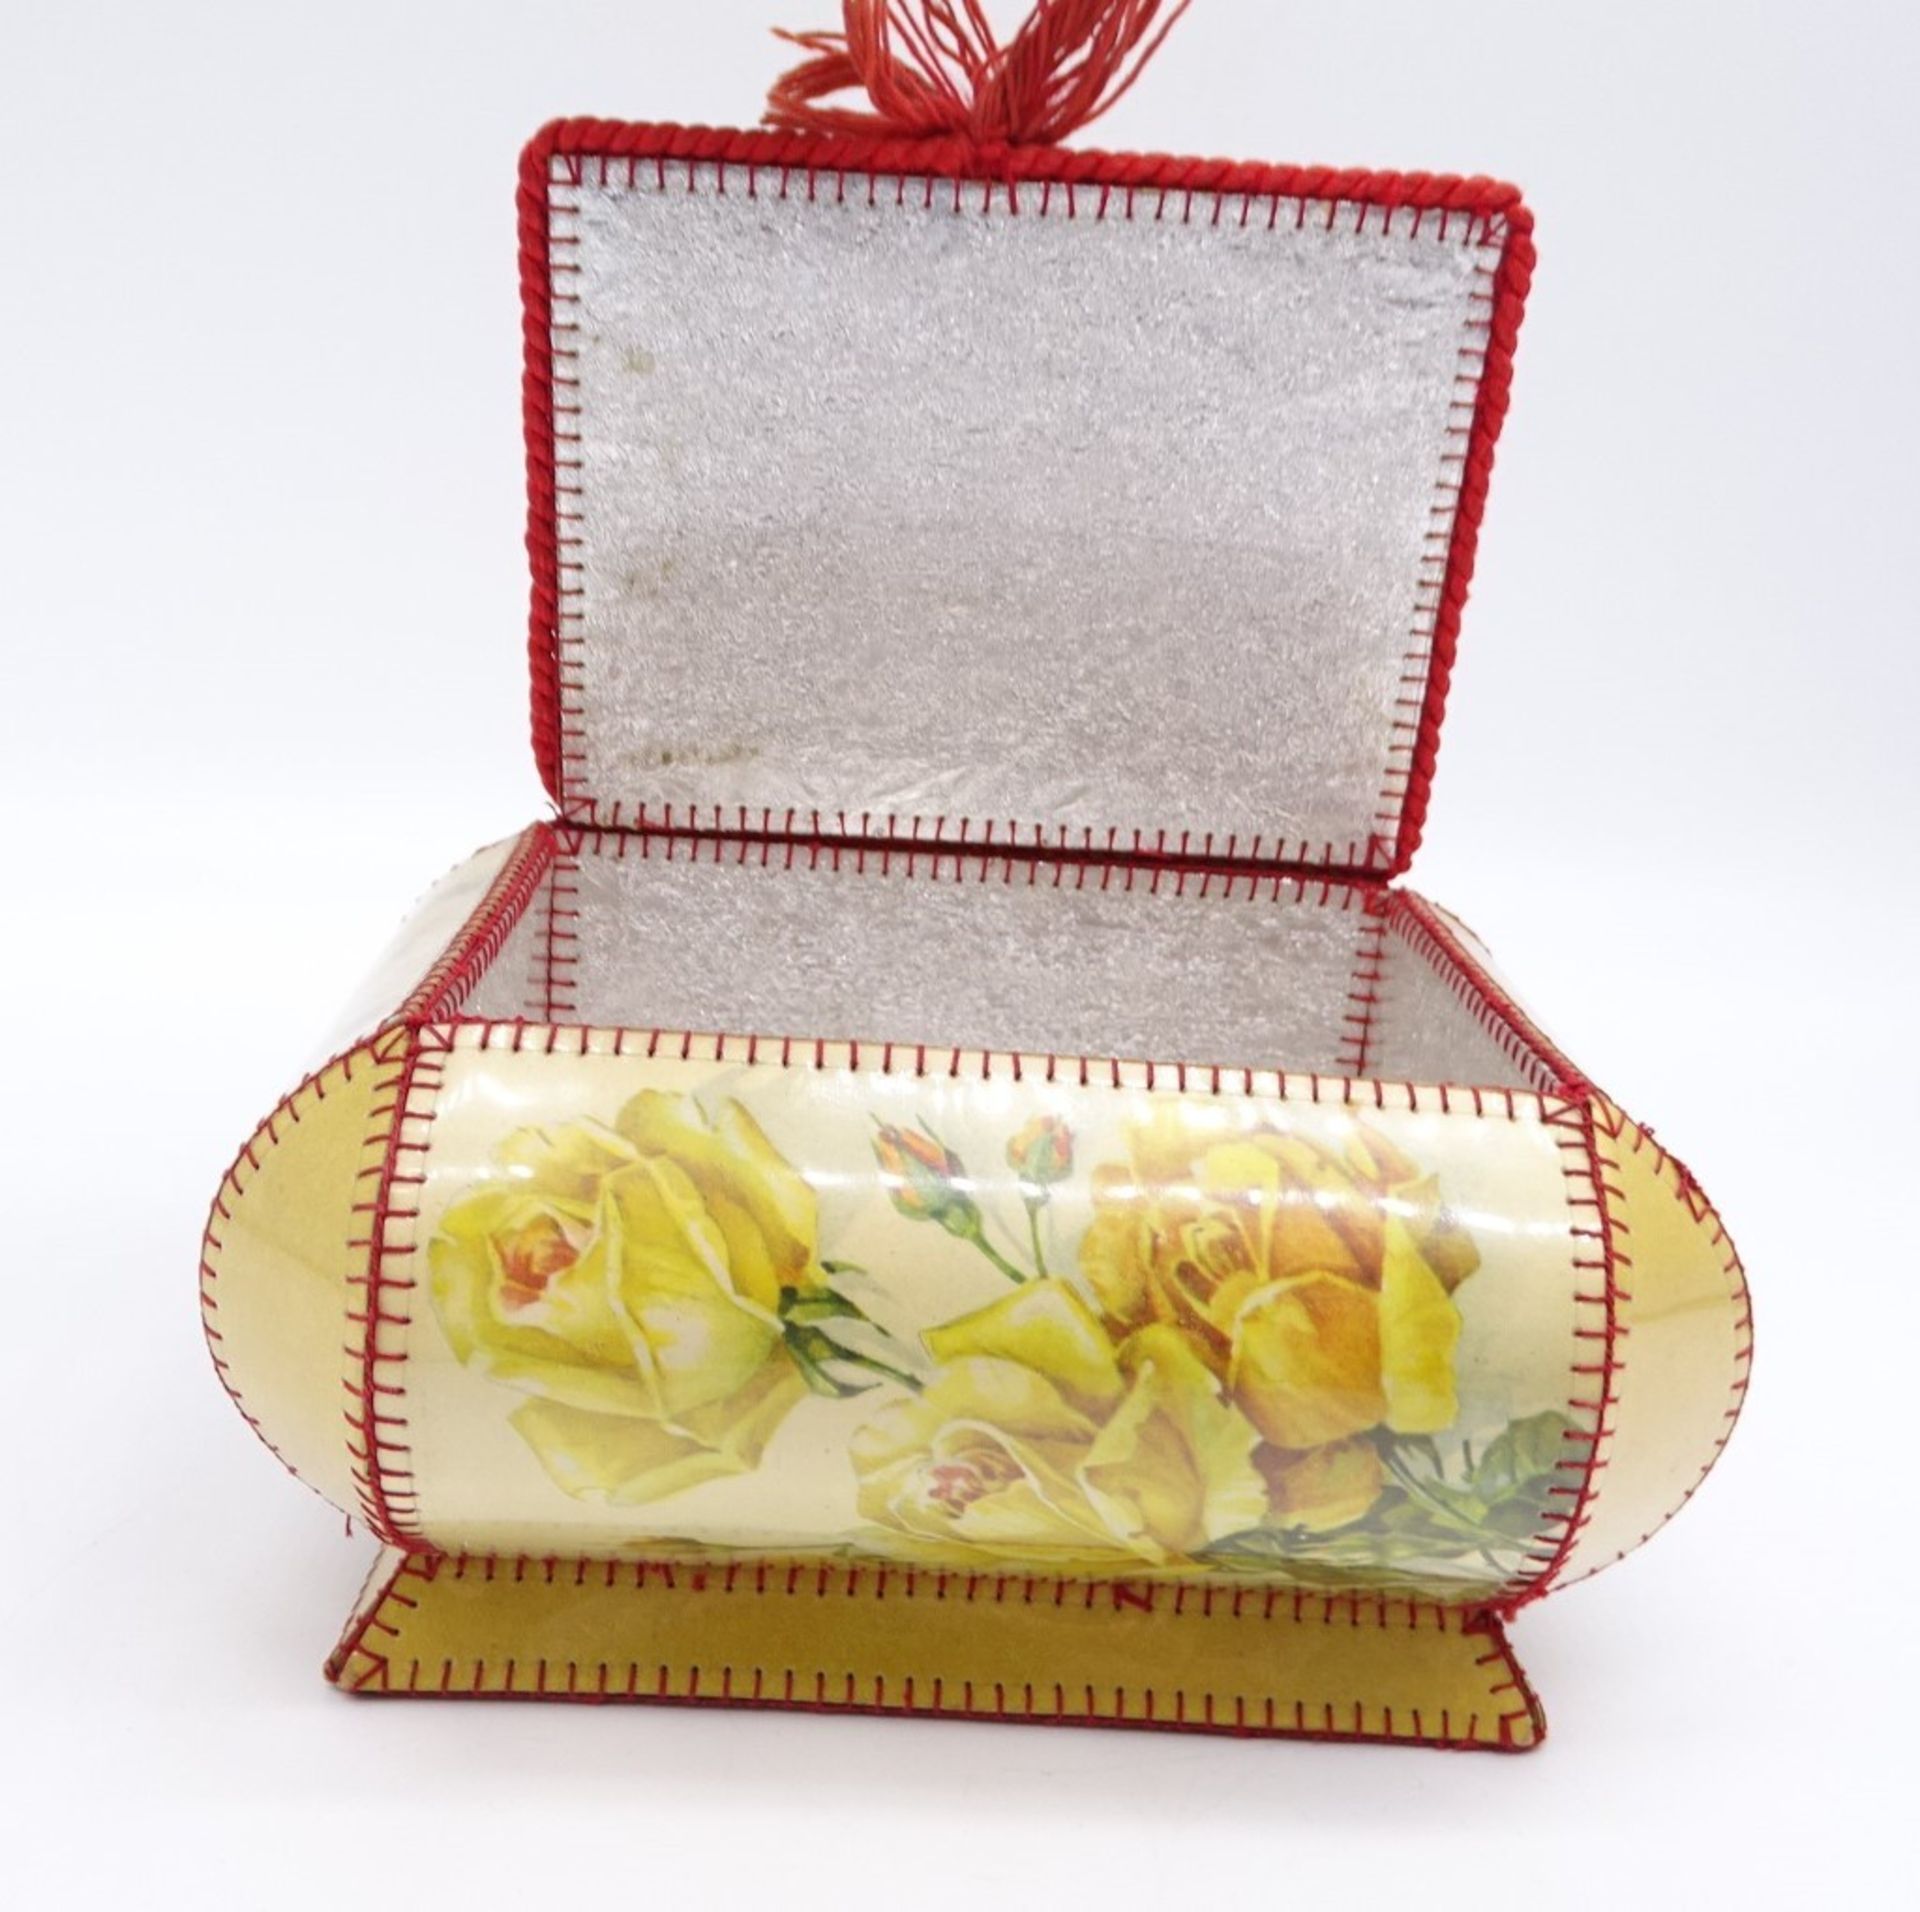 Alte Schatulle mit Rosendekor, Karton, Kunststofffolie, ca. 19 x 11 x 15 cm - Bild 6 aus 7